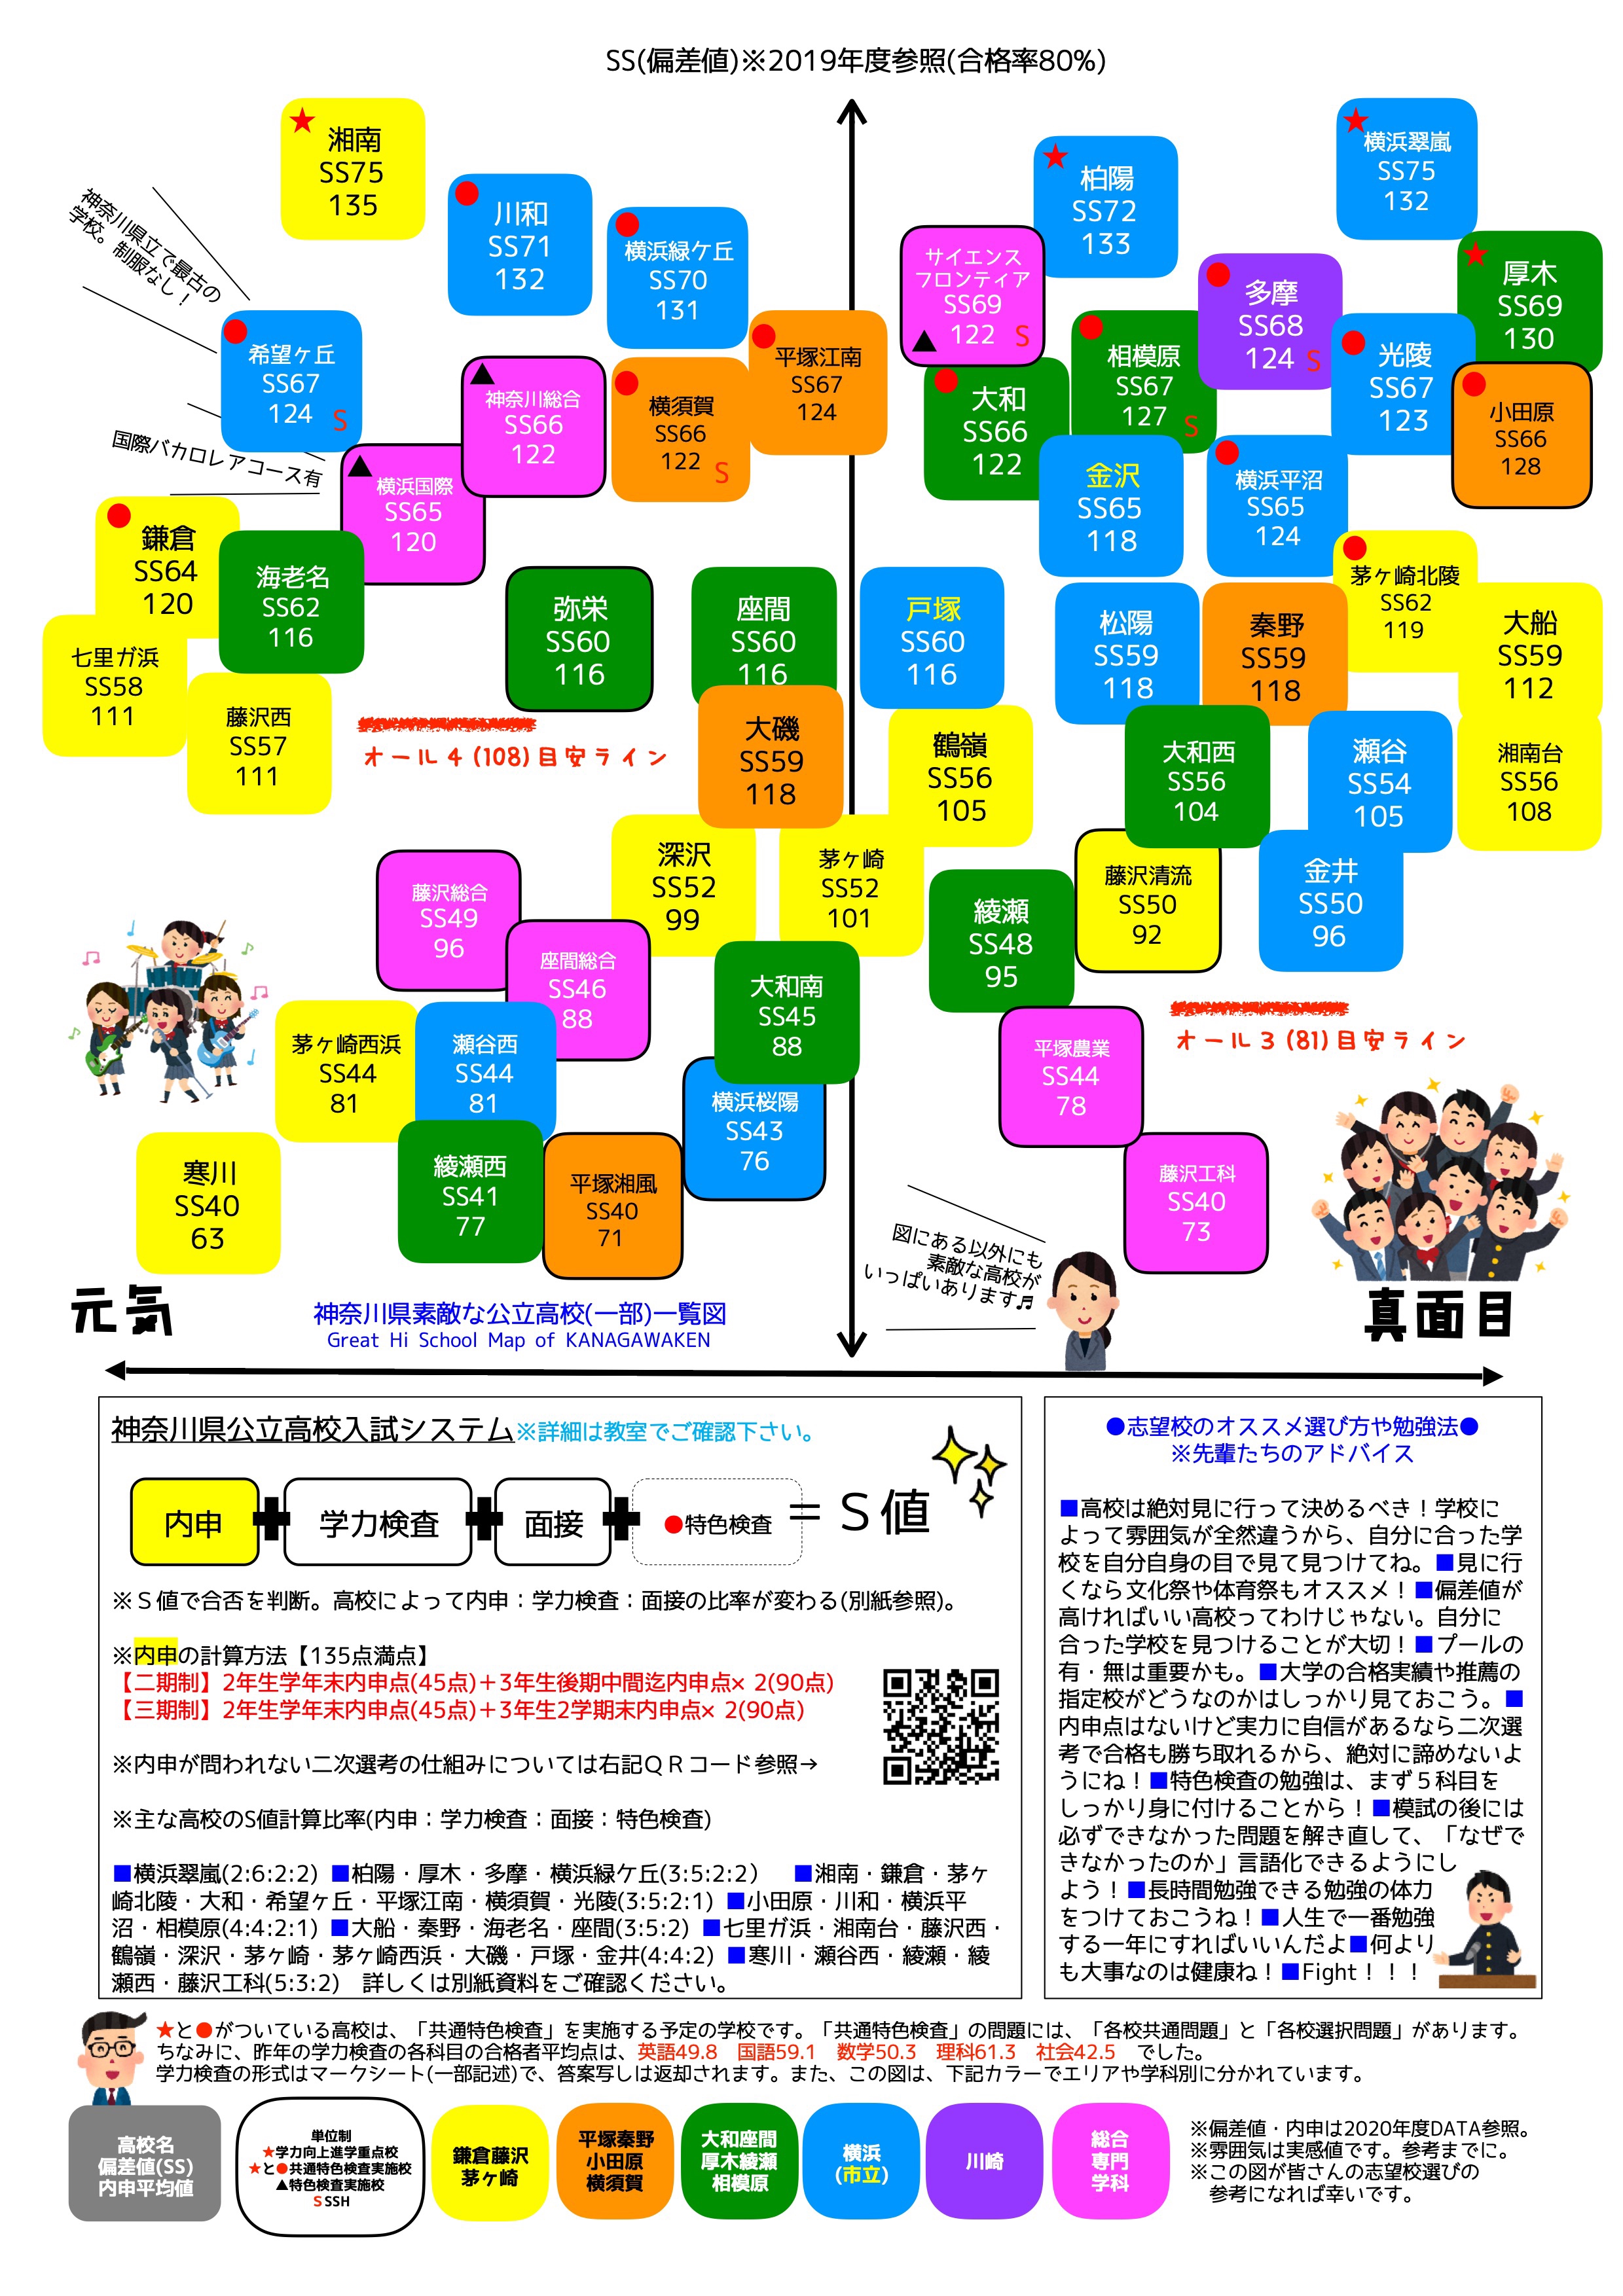 入試 2021 県 高校 神奈川 【2021年度】神奈川県公立高校入試の傾向と難易度